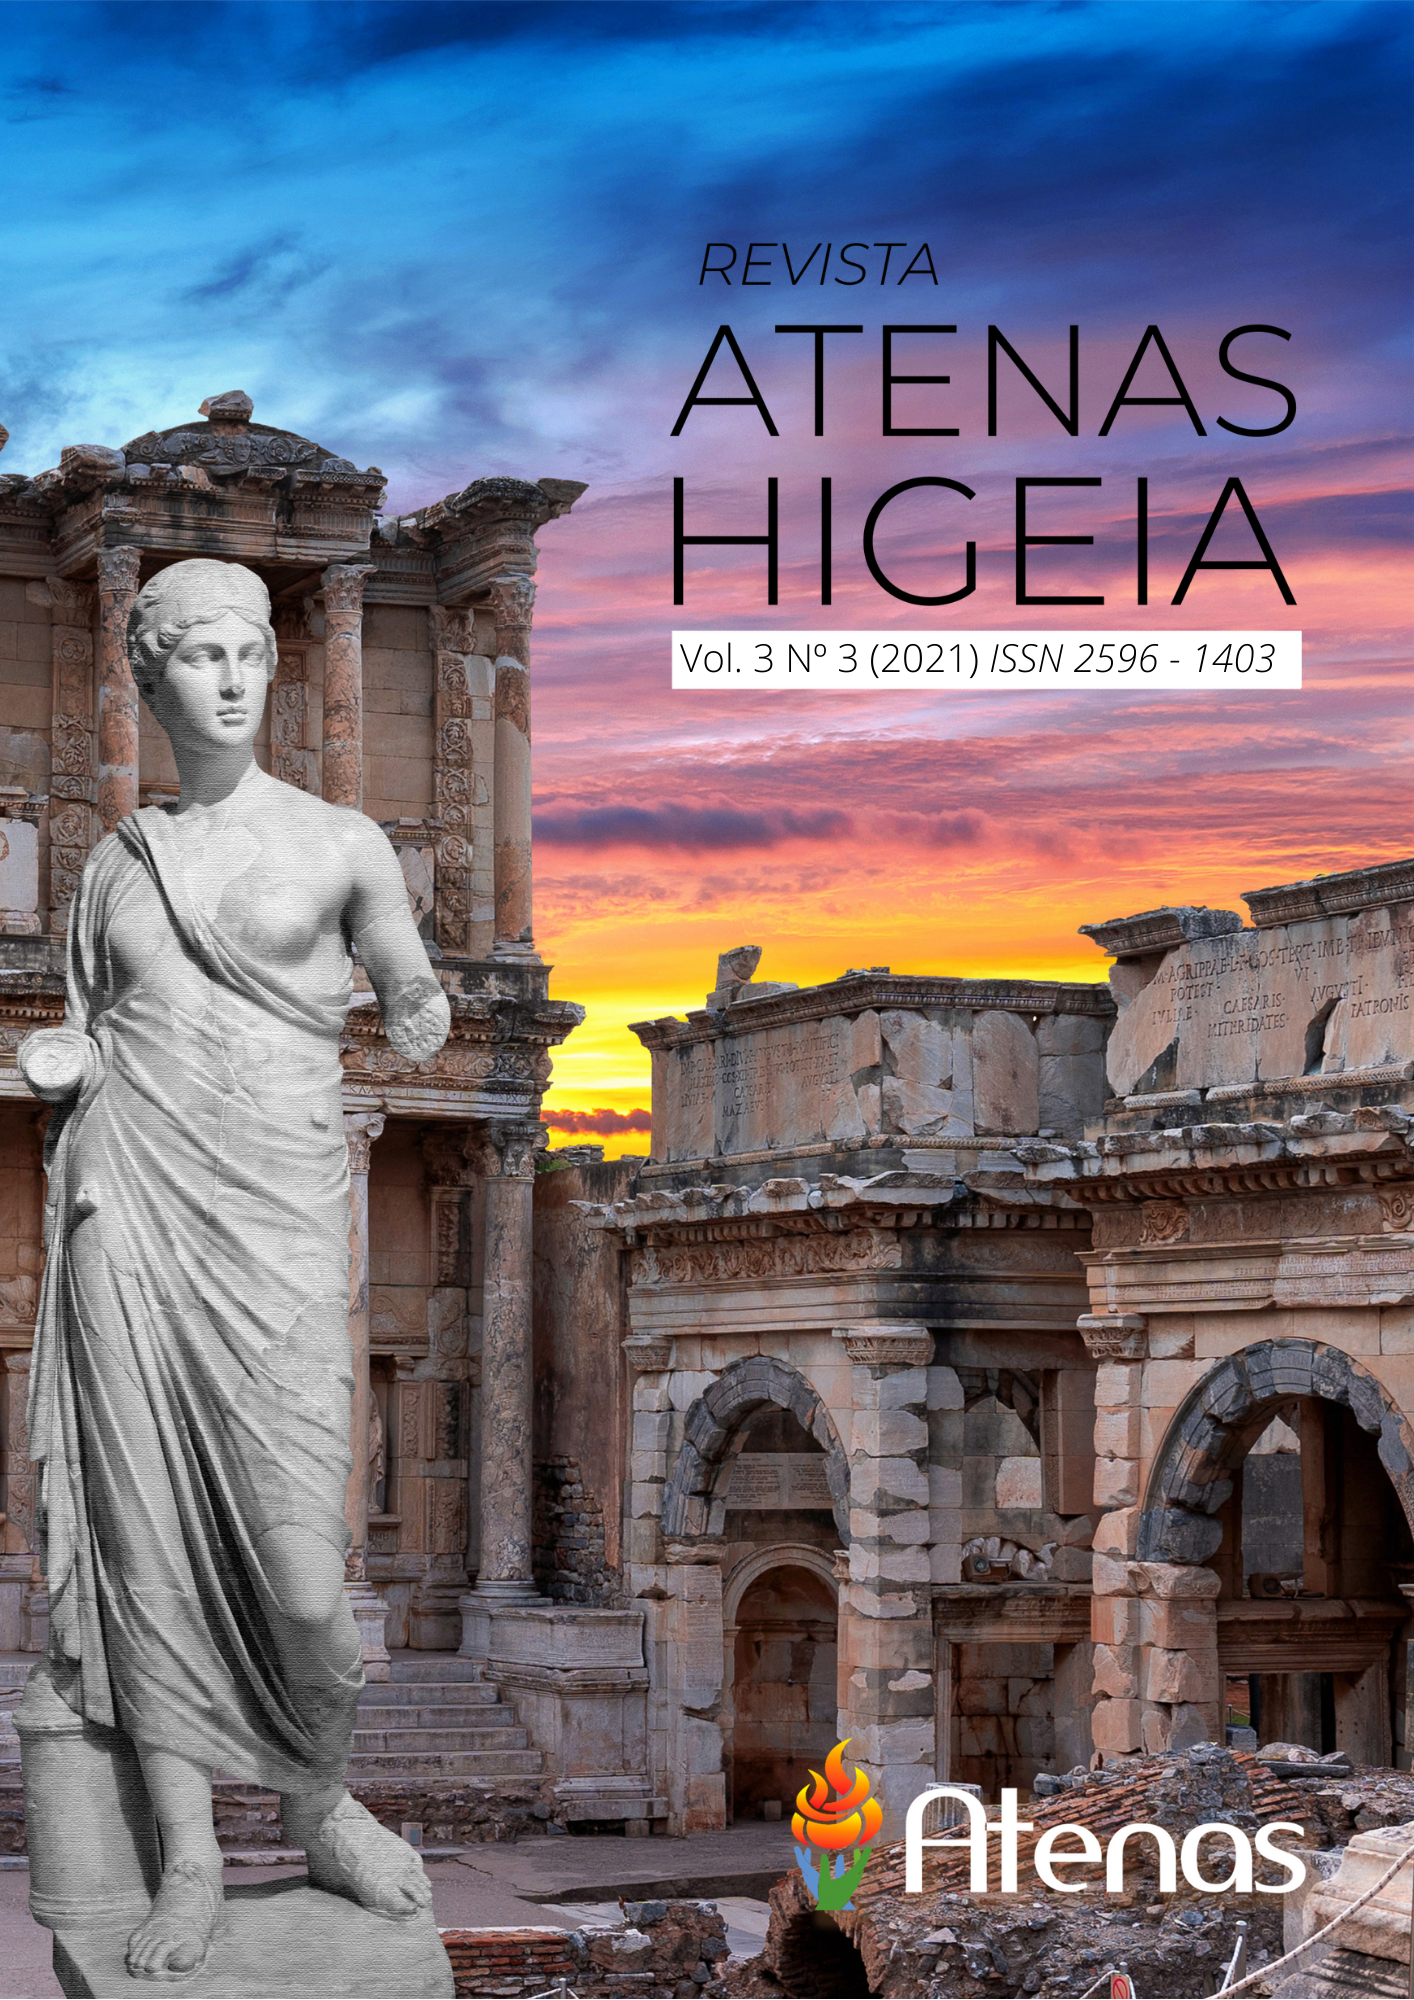 					Visualizar v. 3 n. 3 (2021): Revista Atenas Higeia
				